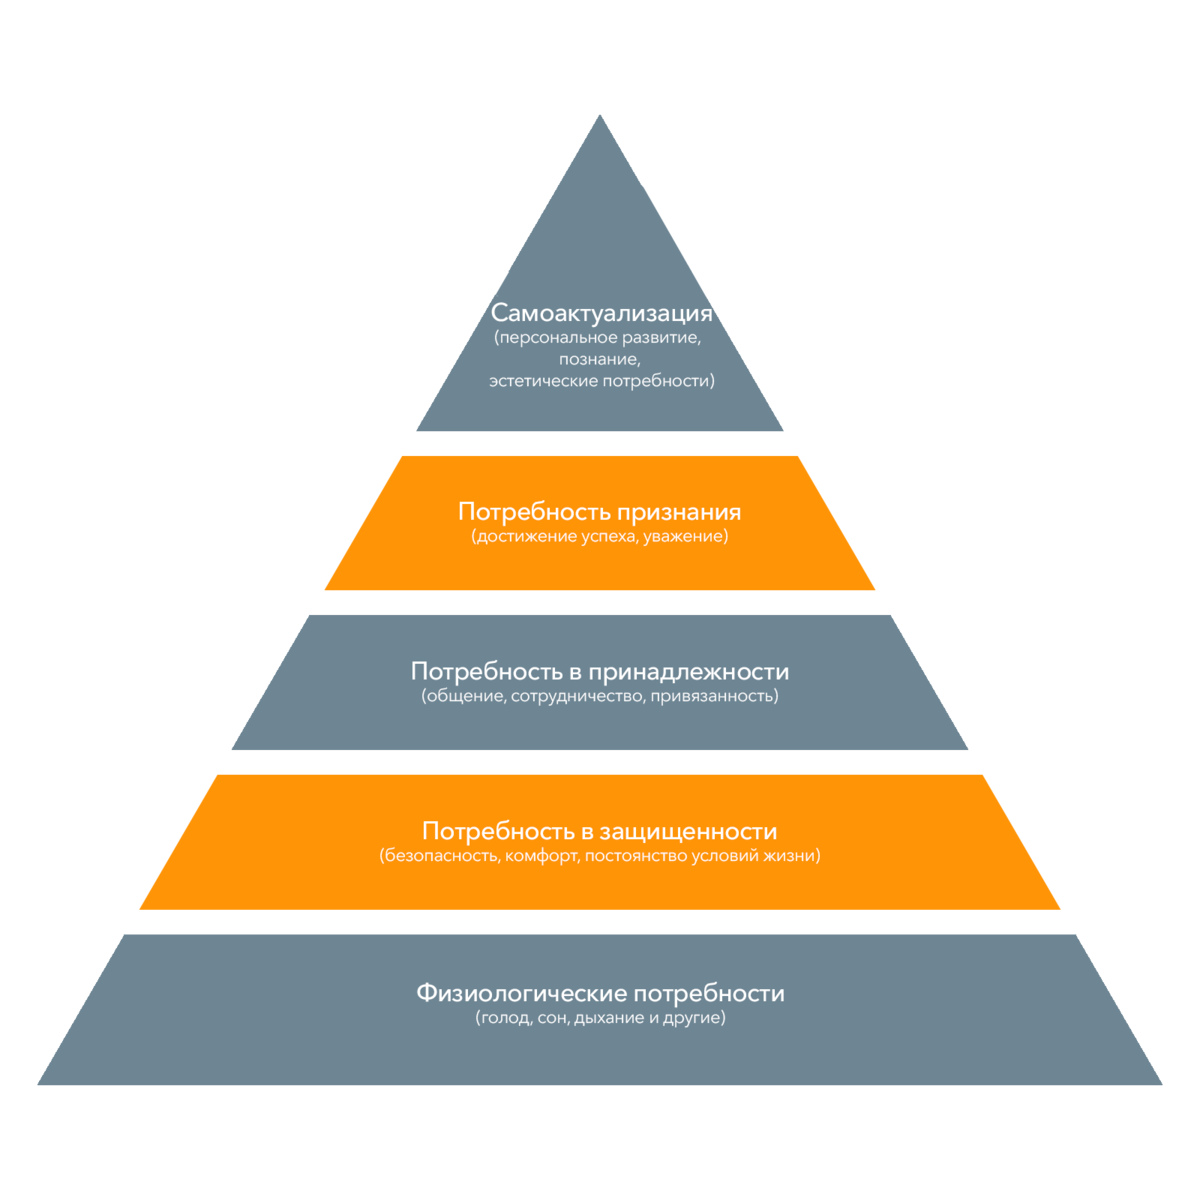 Логика пирамиды проста: человек закрывает потребности поочередно — от базовых (где взять еду и как сохранить здоровье) до самых сложных (как быть полезным миру). Профессиональная мотивация напрямую связана с этой пирамидой